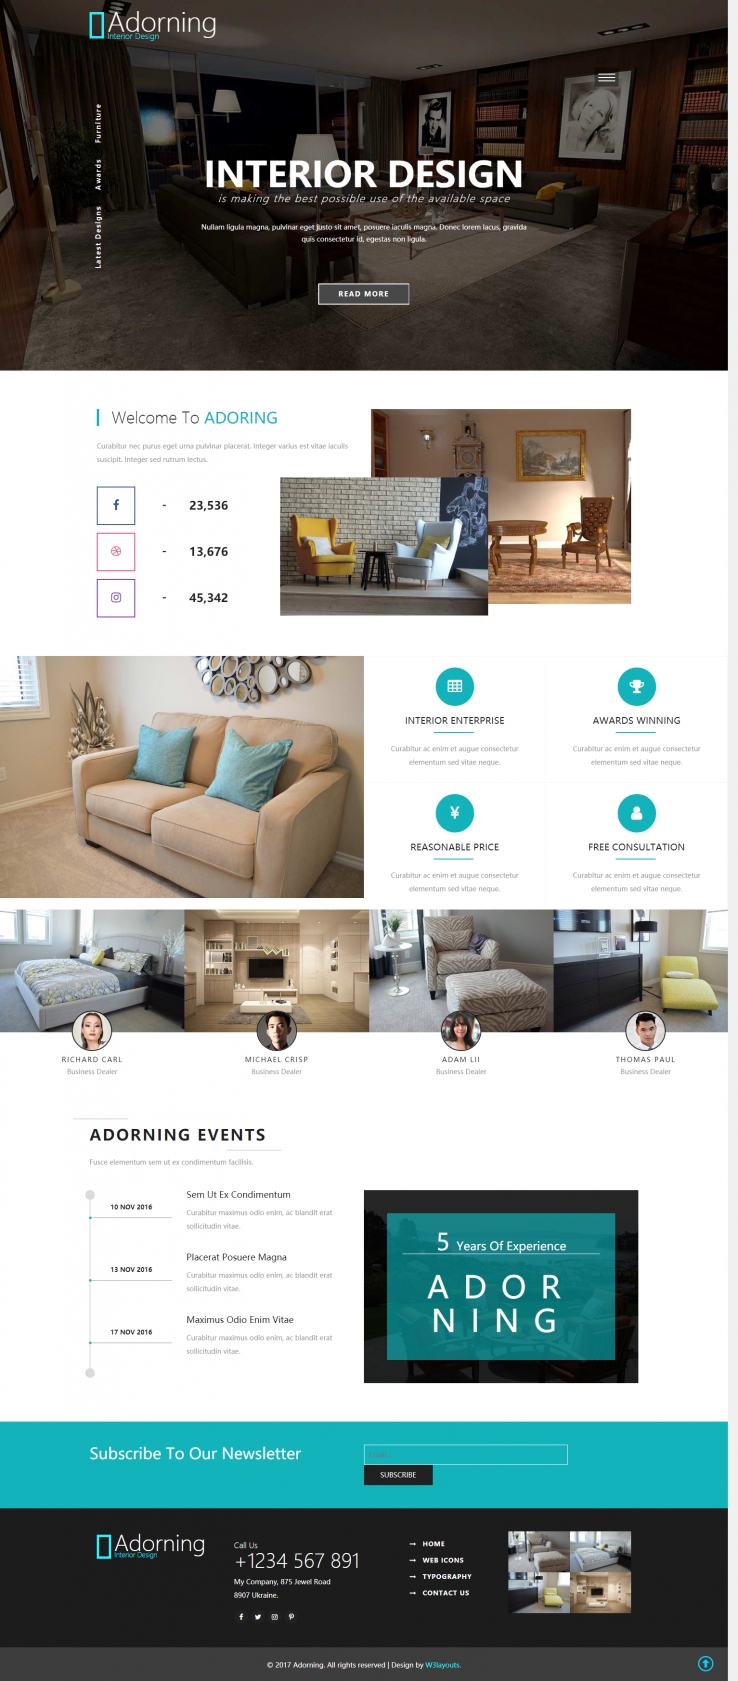 蓝色简洁风格的室内装饰设计整站网站源码下载